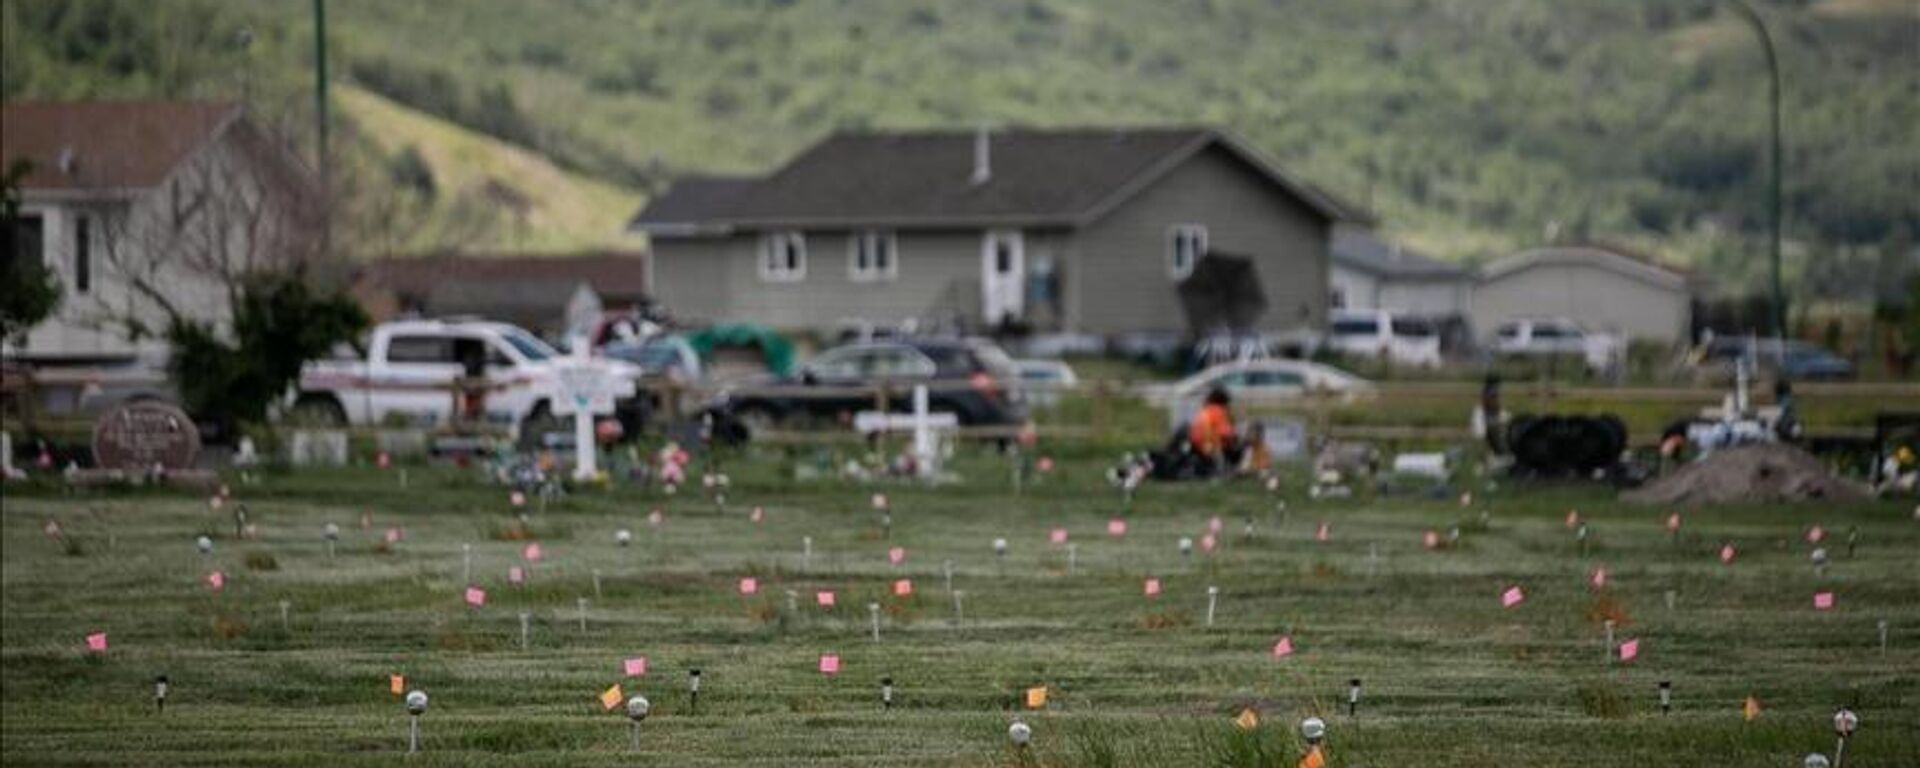 Kanada'nın Ontario bölgesindeki eski yatılı kilise okulu sahasındaki araştırmada, mezar olduğu değerlendirilen 171 yeni yer tespit edildiği, bunların okulda yatılı kalan çocuklara ait mezarlar olabileceği belirtildi. - Sputnik Türkiye, 1920, 18.01.2023